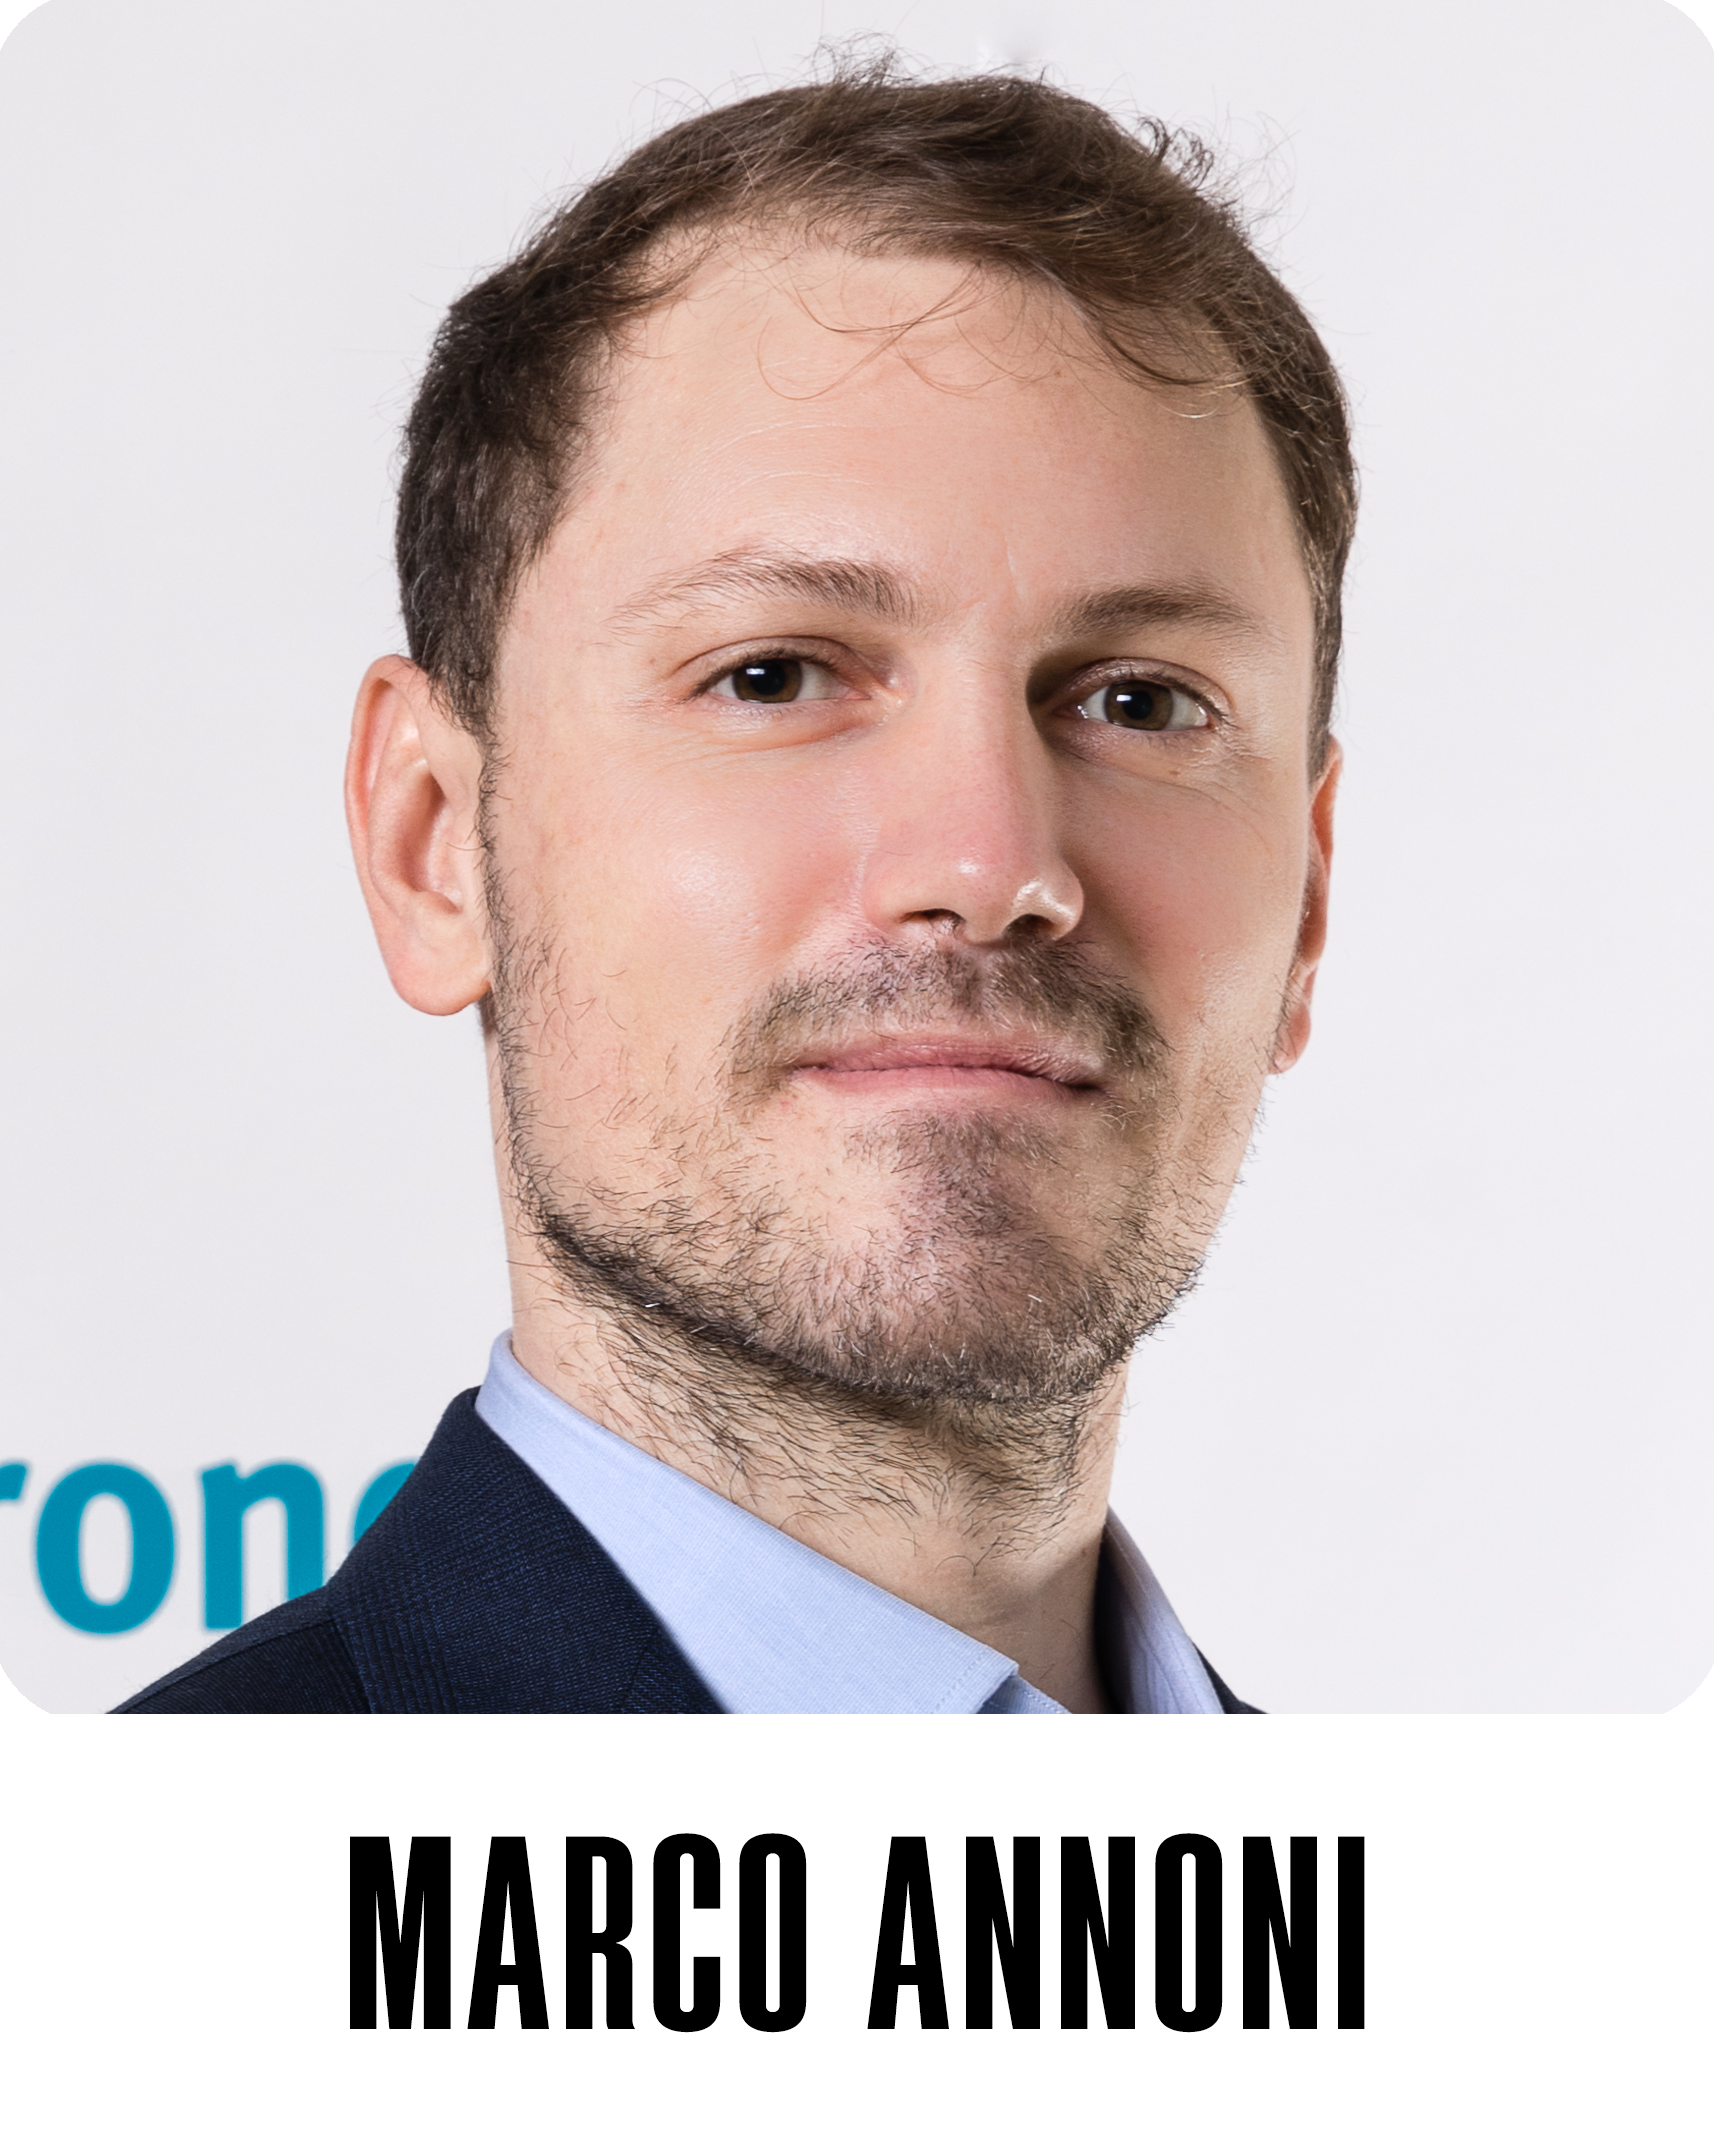 Marco Annoni